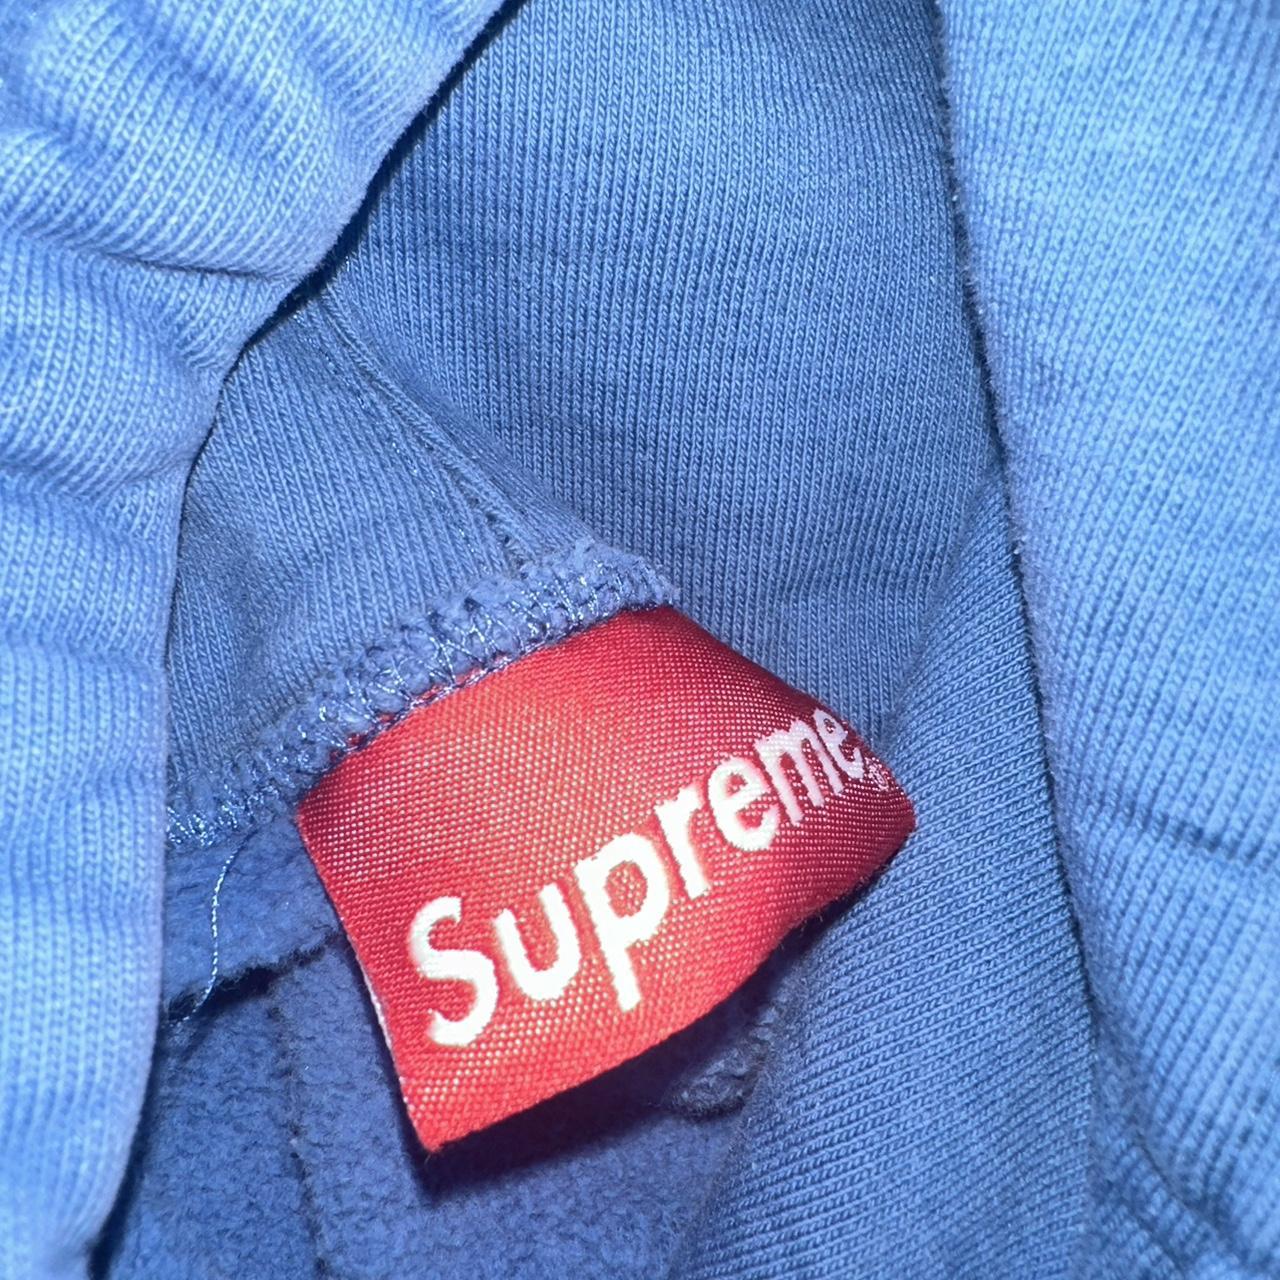 Accepting offers Medium blue supreme hoodie worn 3... - Depop